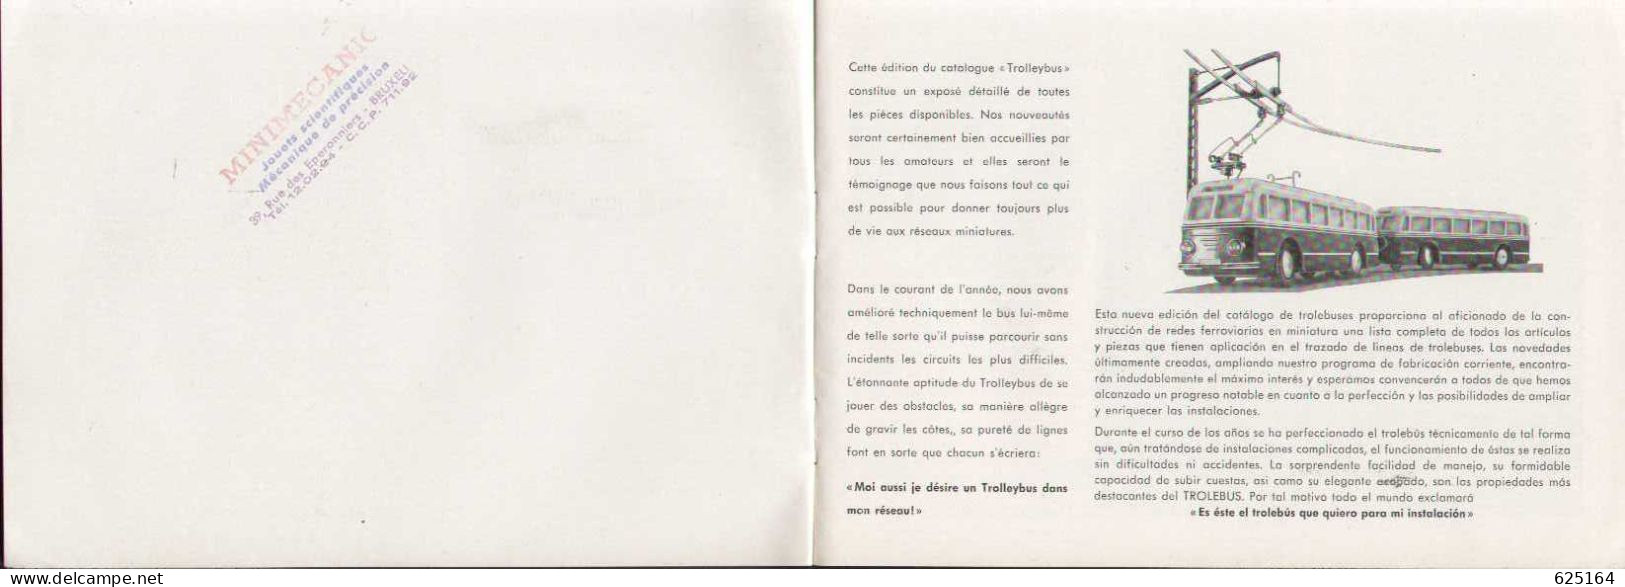 Catalogue EHEIM TROLLEY-BUS 1954  HO 1:87 - Französische Ausgabe - Frans